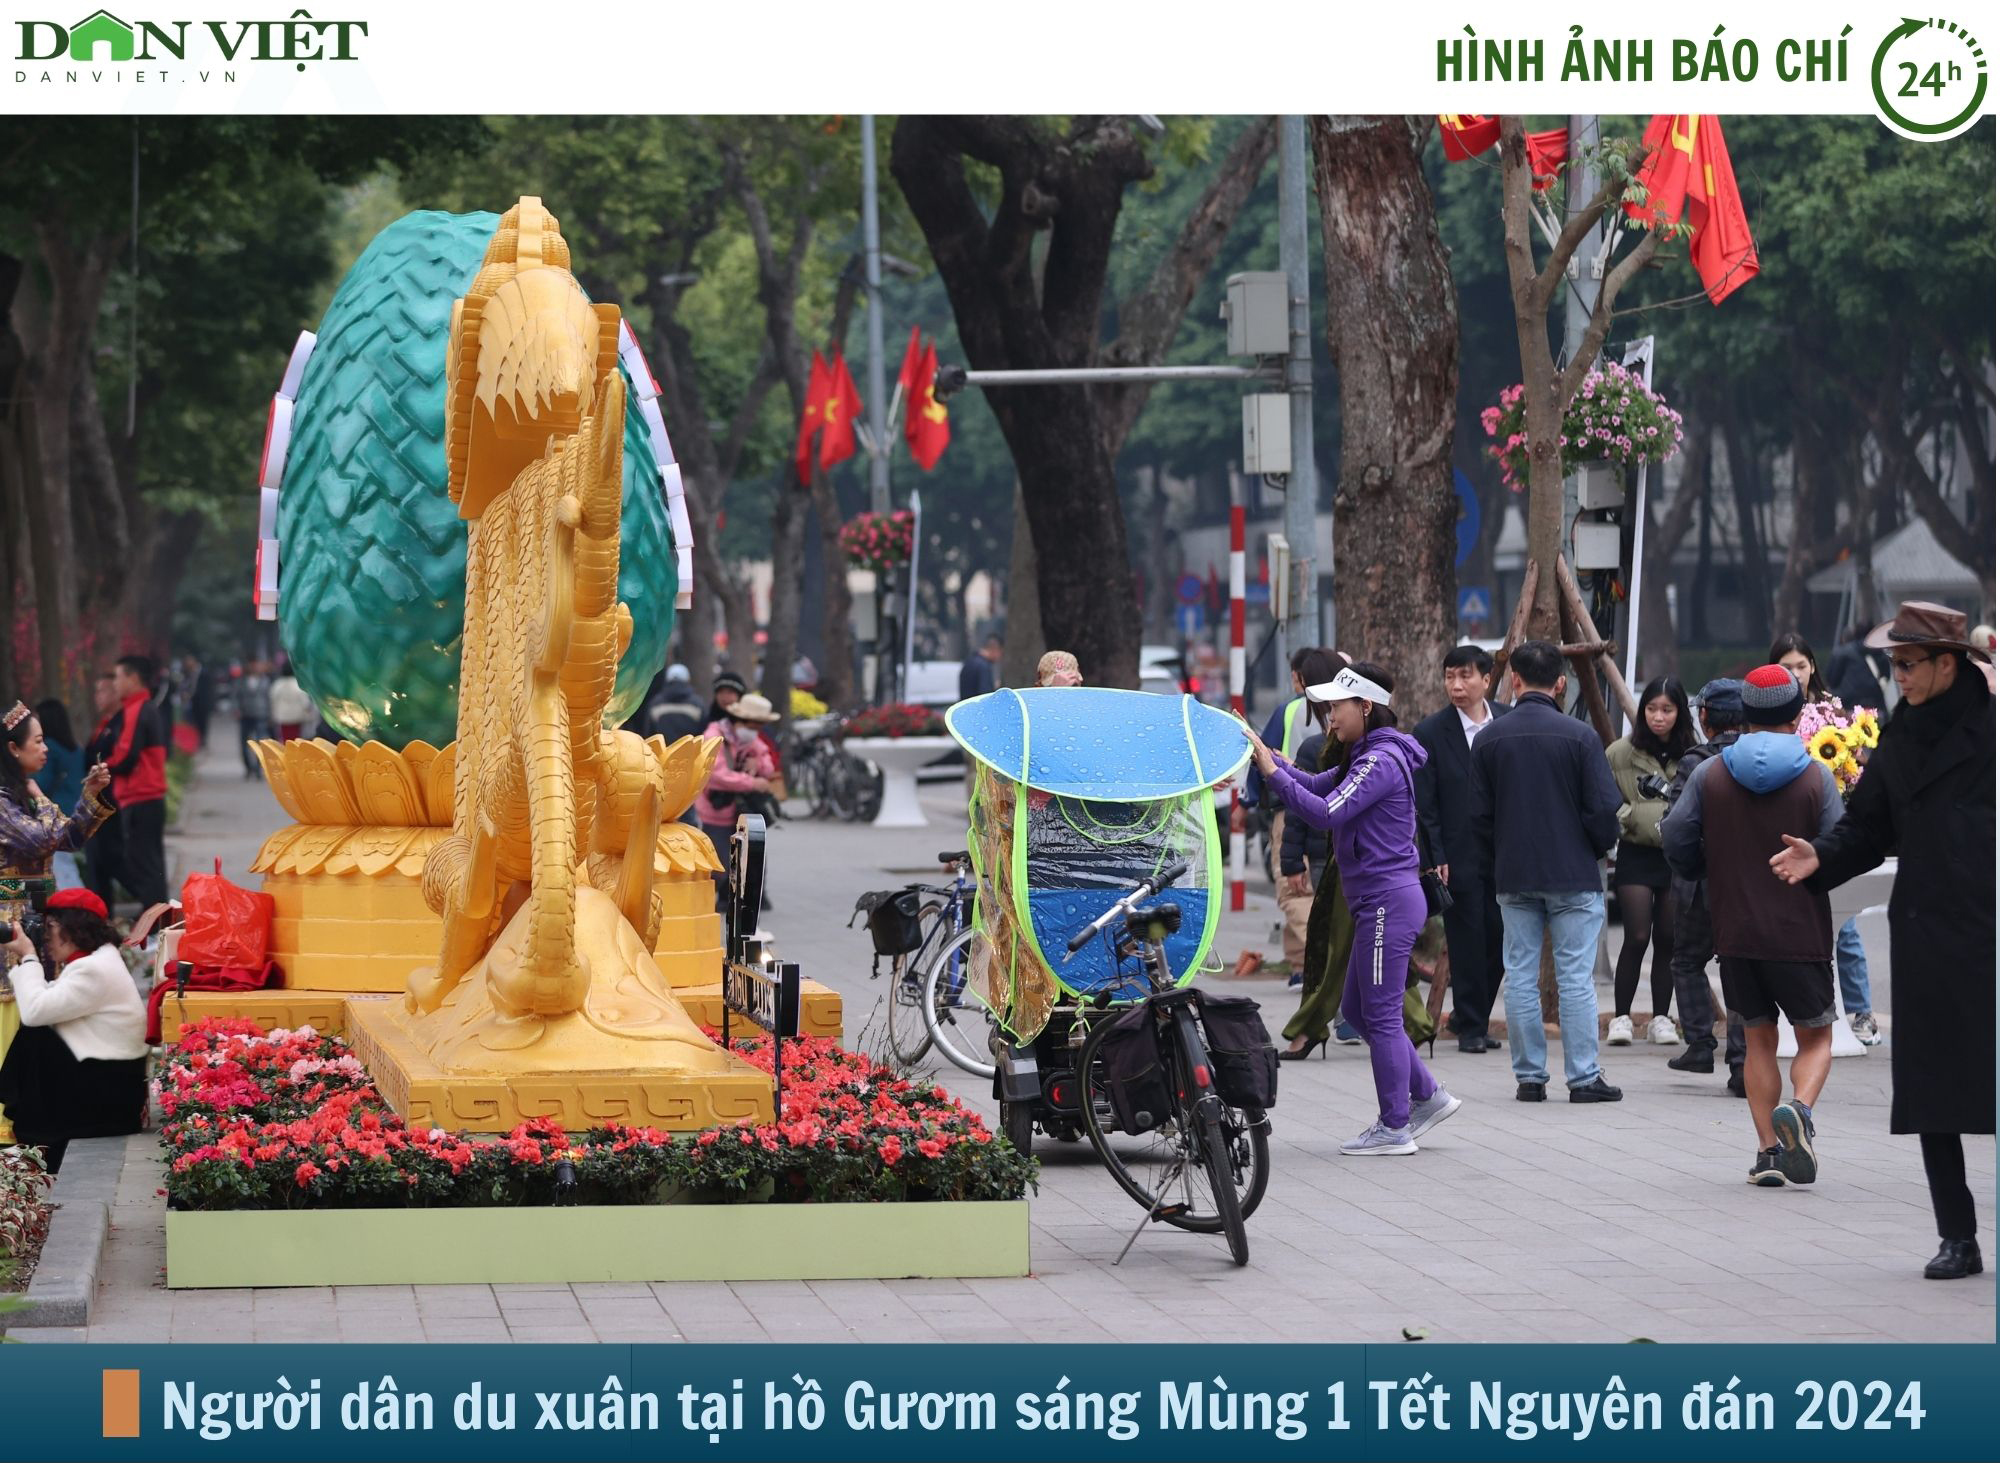 Hình ảnh báo chí 24h: Hồ Gươm đông đúc, người Hà Nội du xuân ngày mùng 1 Tết- Ảnh 1.